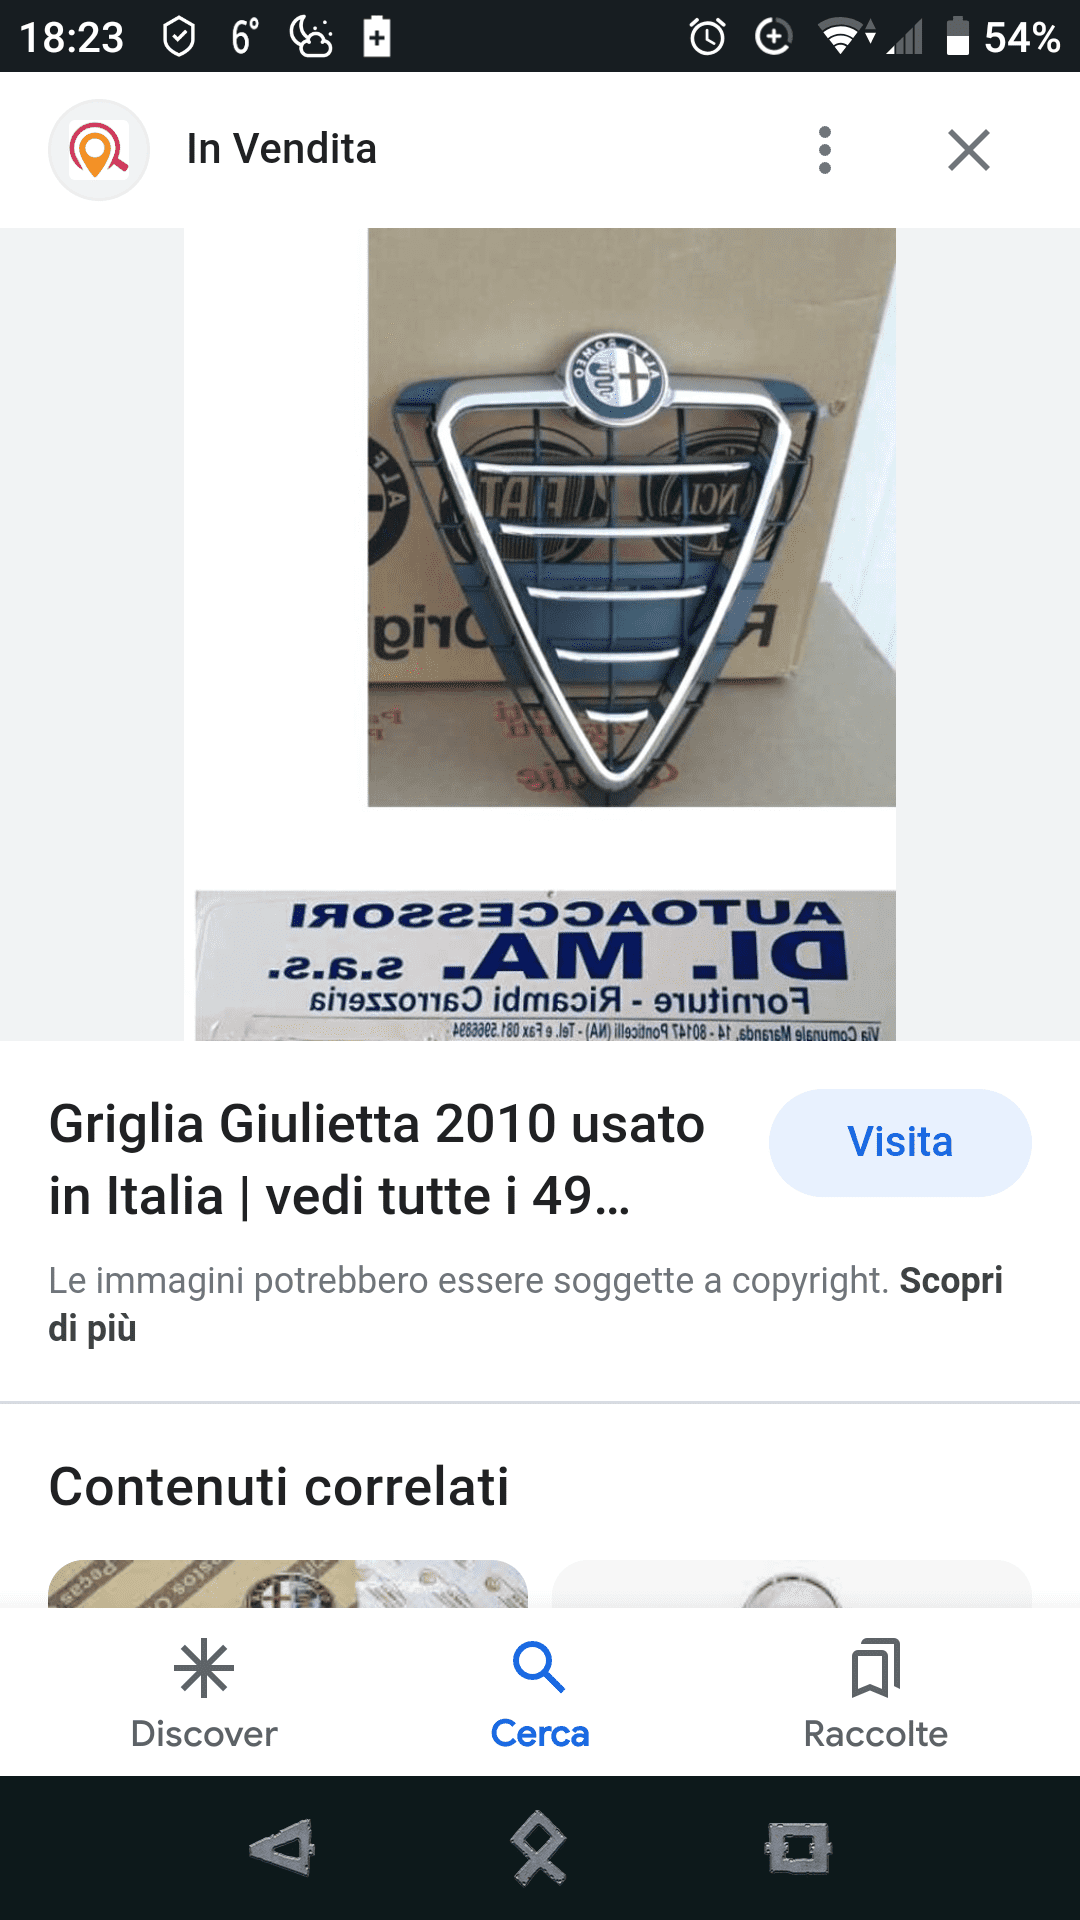 cambio caratteristiche interni giulietta - ClubAlfa.it Forum